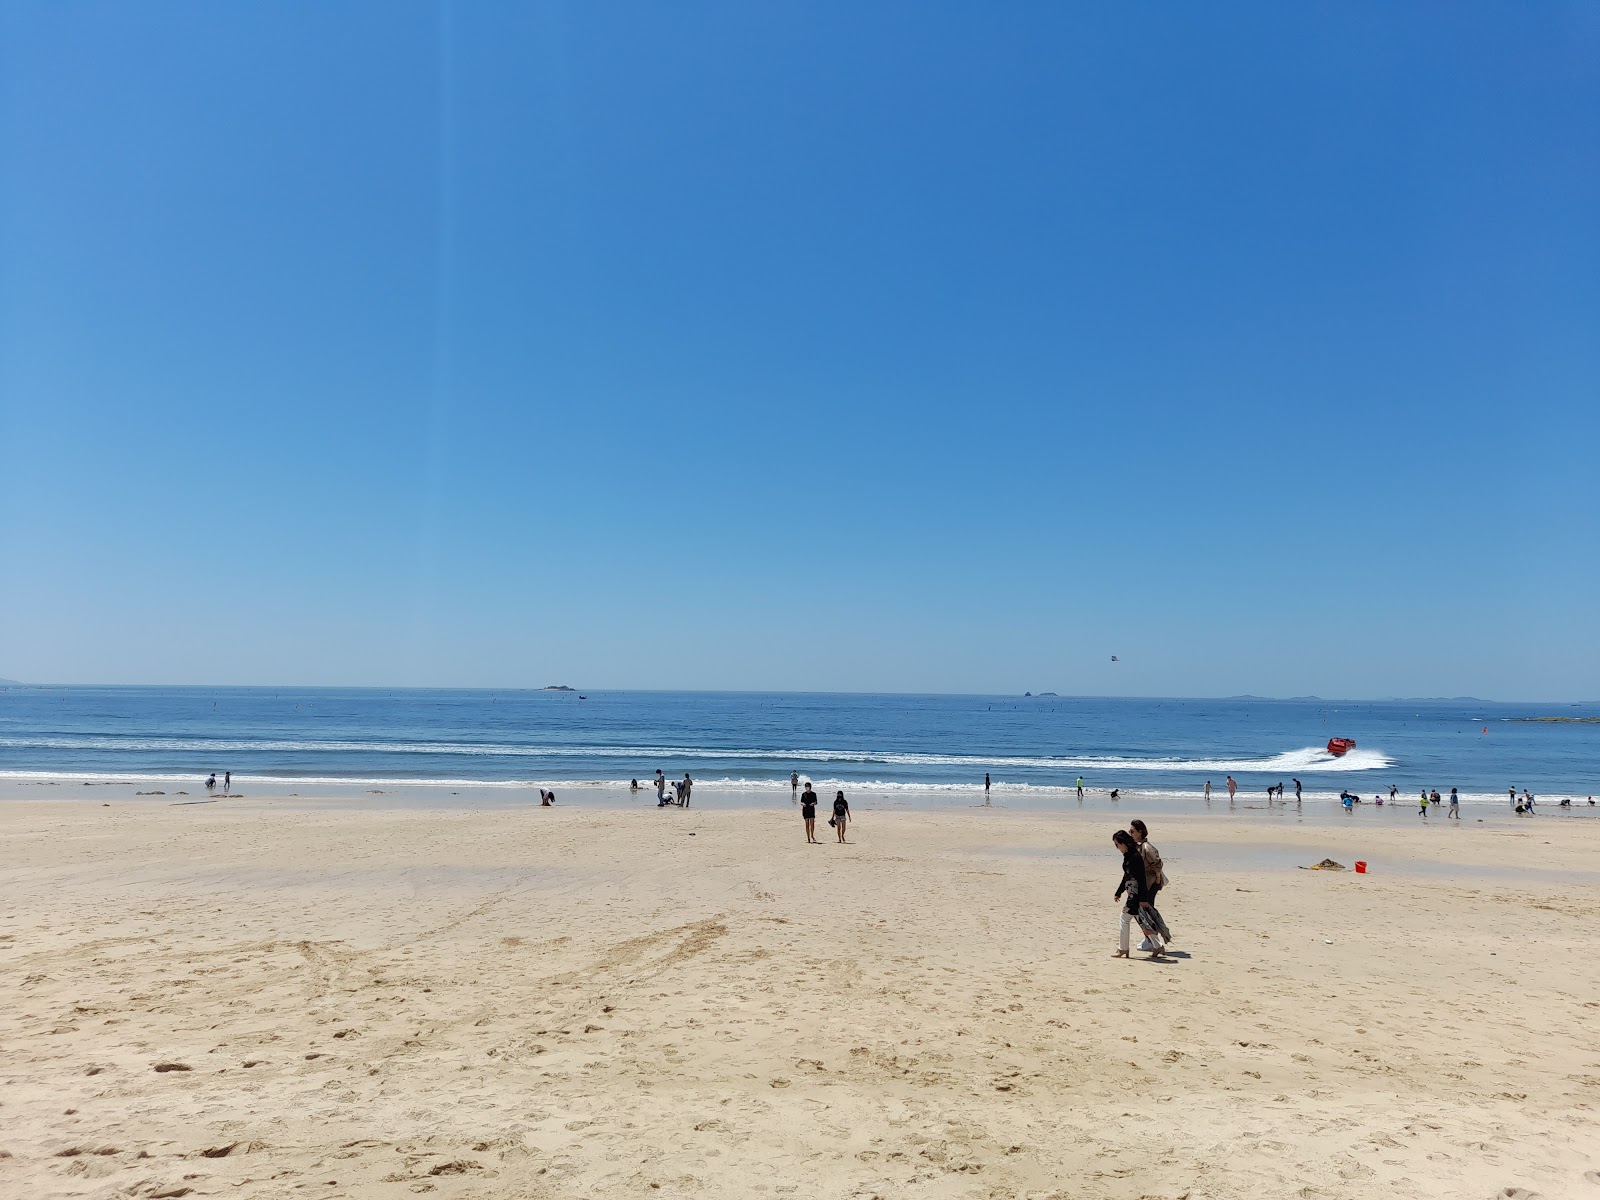 Nanjido Beach'in fotoğrafı geniş plaj ile birlikte